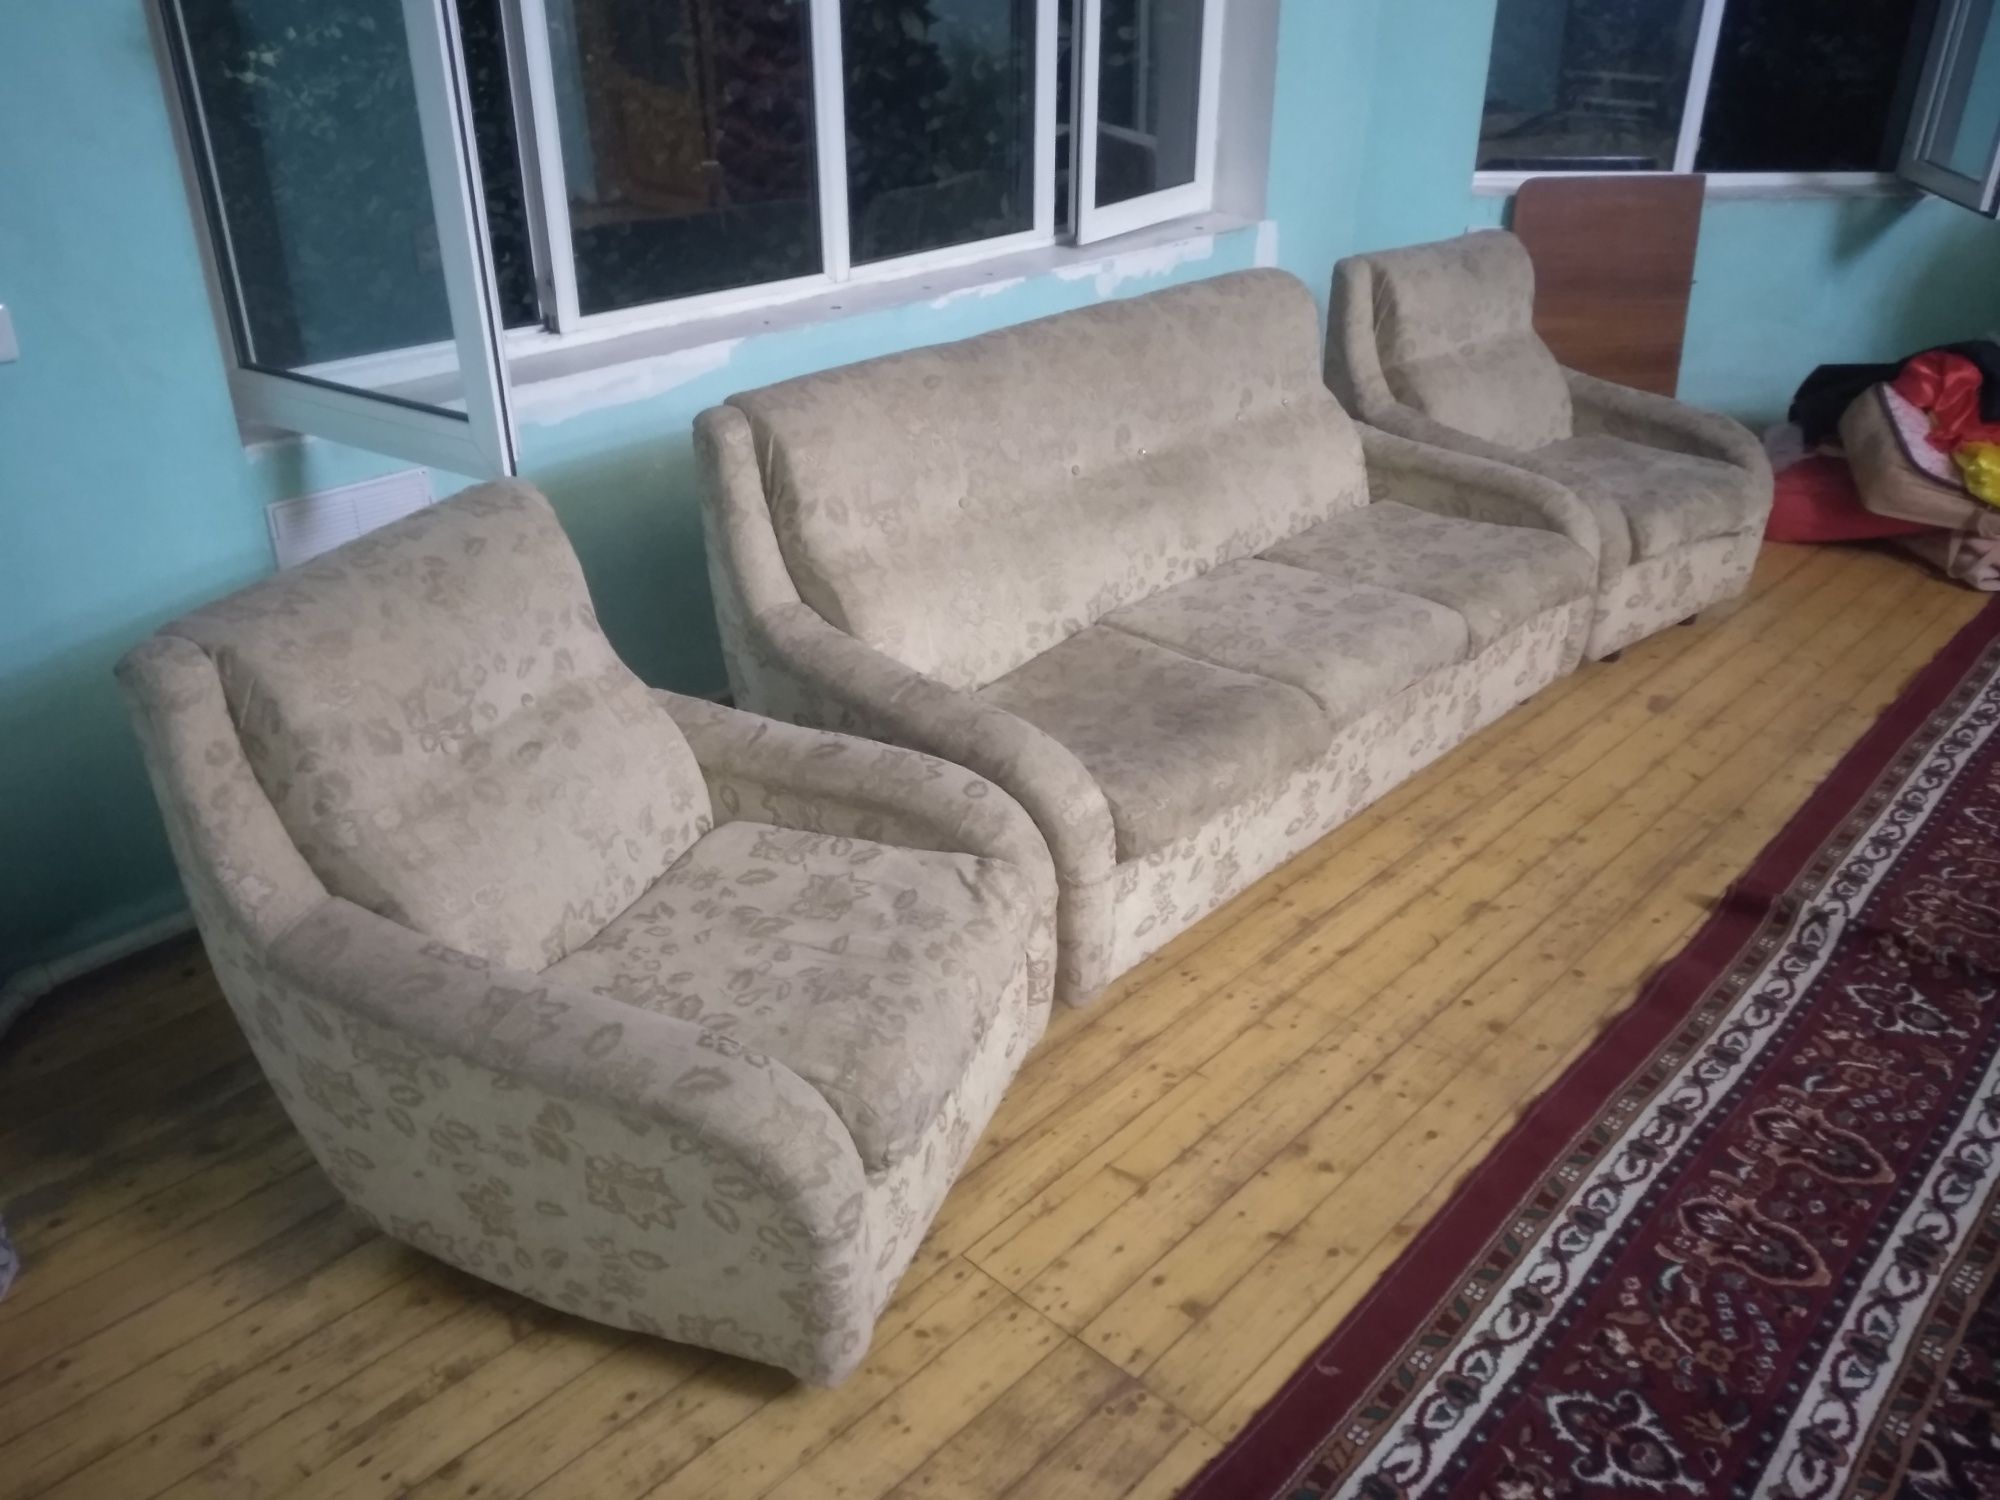 Продается диван с расладным механизмом и два кресла, в хорошем состоян